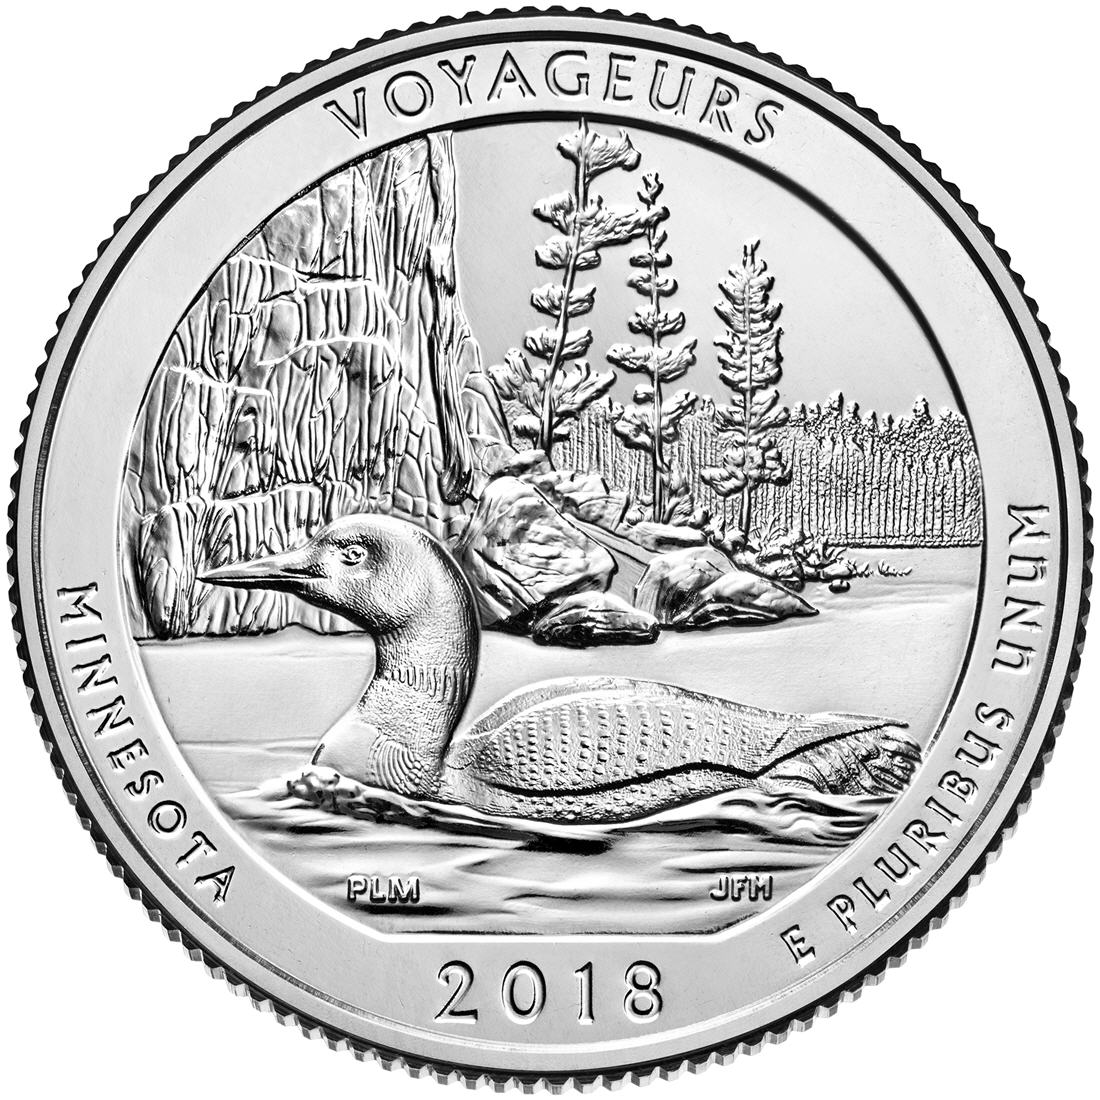 2018 Quarter USA Voyageurs National Park Minnesota Reverse